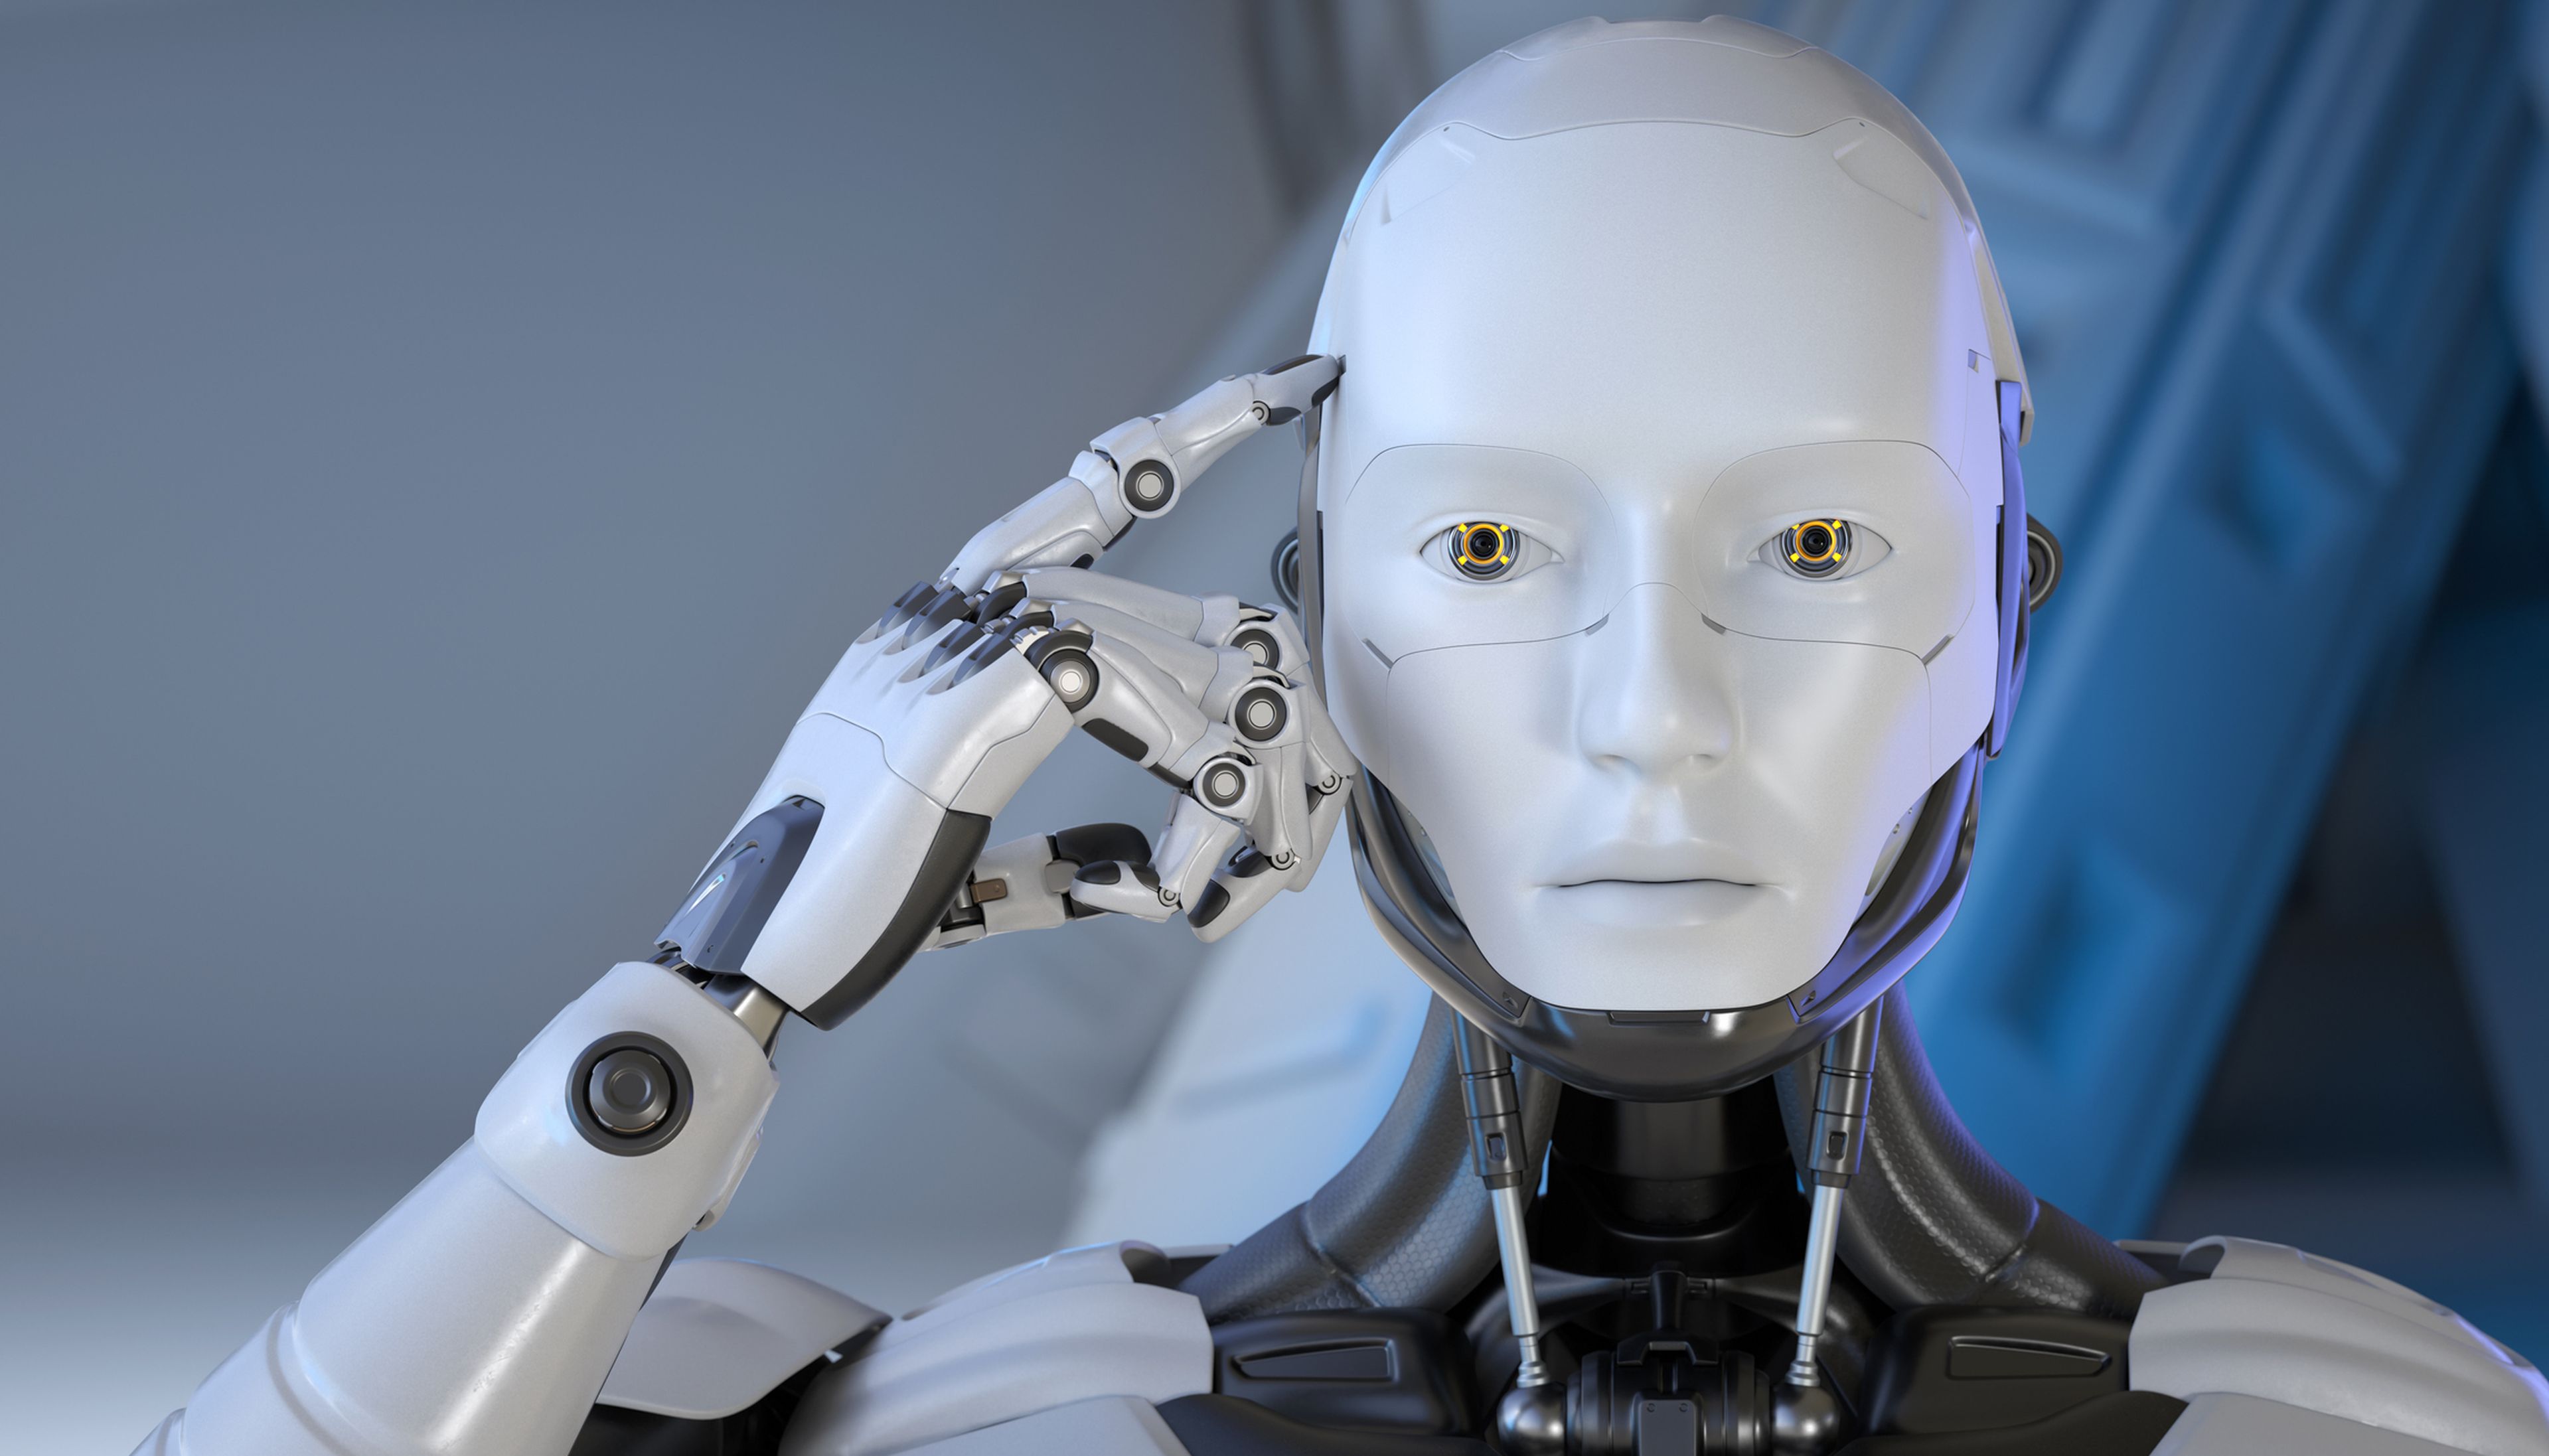 Crean un robot que tiene "conciencia tridimensional" de sí mismo | Business Insider España